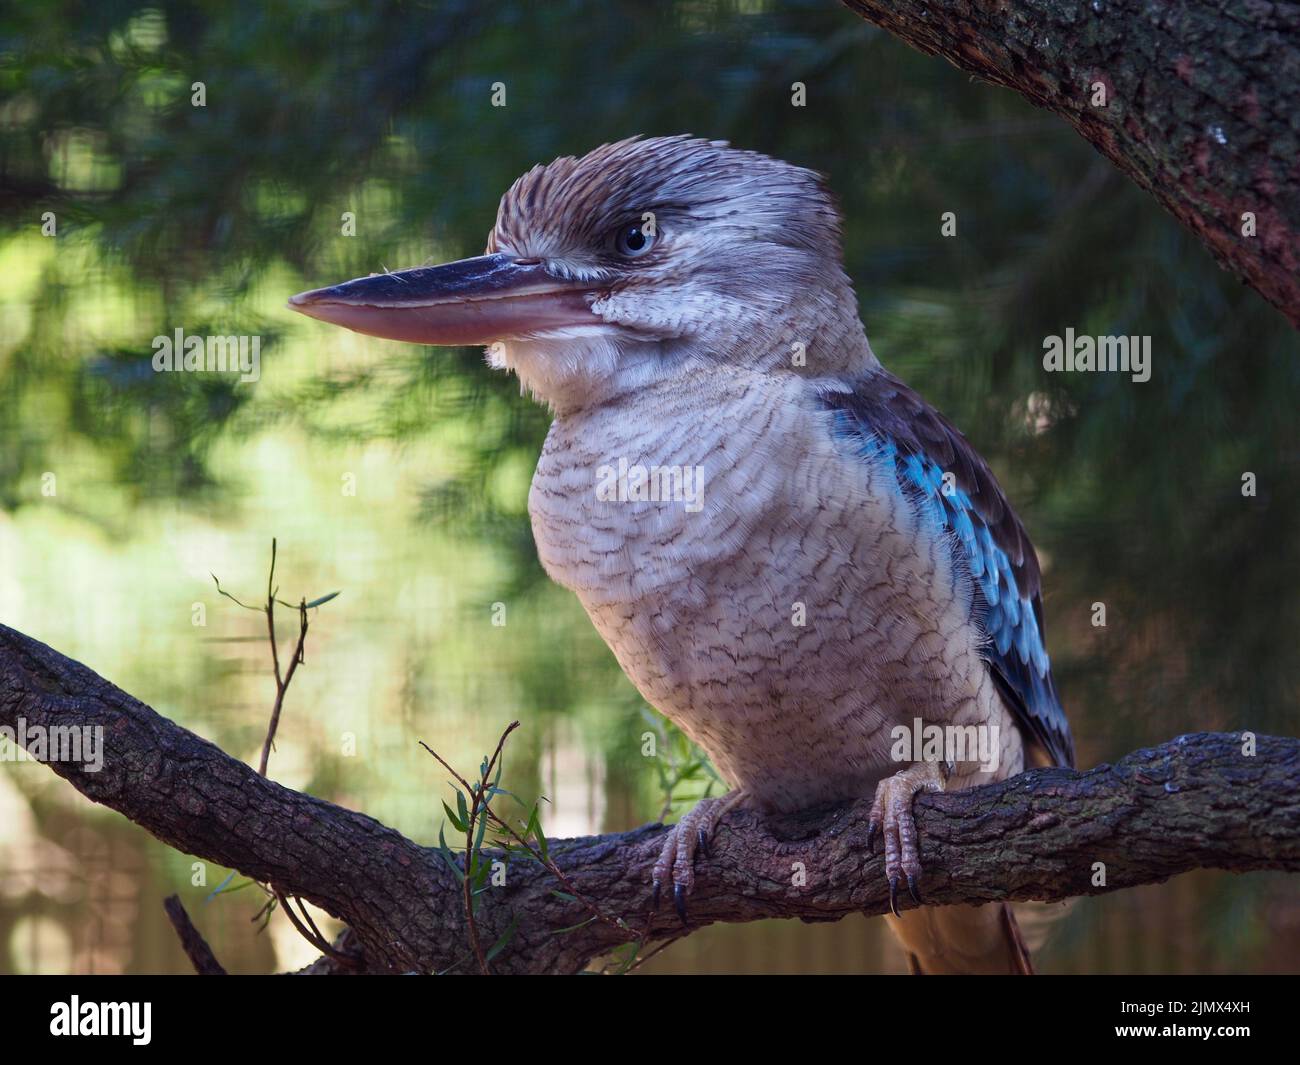 Maravilloso y glorioso Kookaburra de alas azules con ojos agudos y un plumaje distintivo. Foto de stock